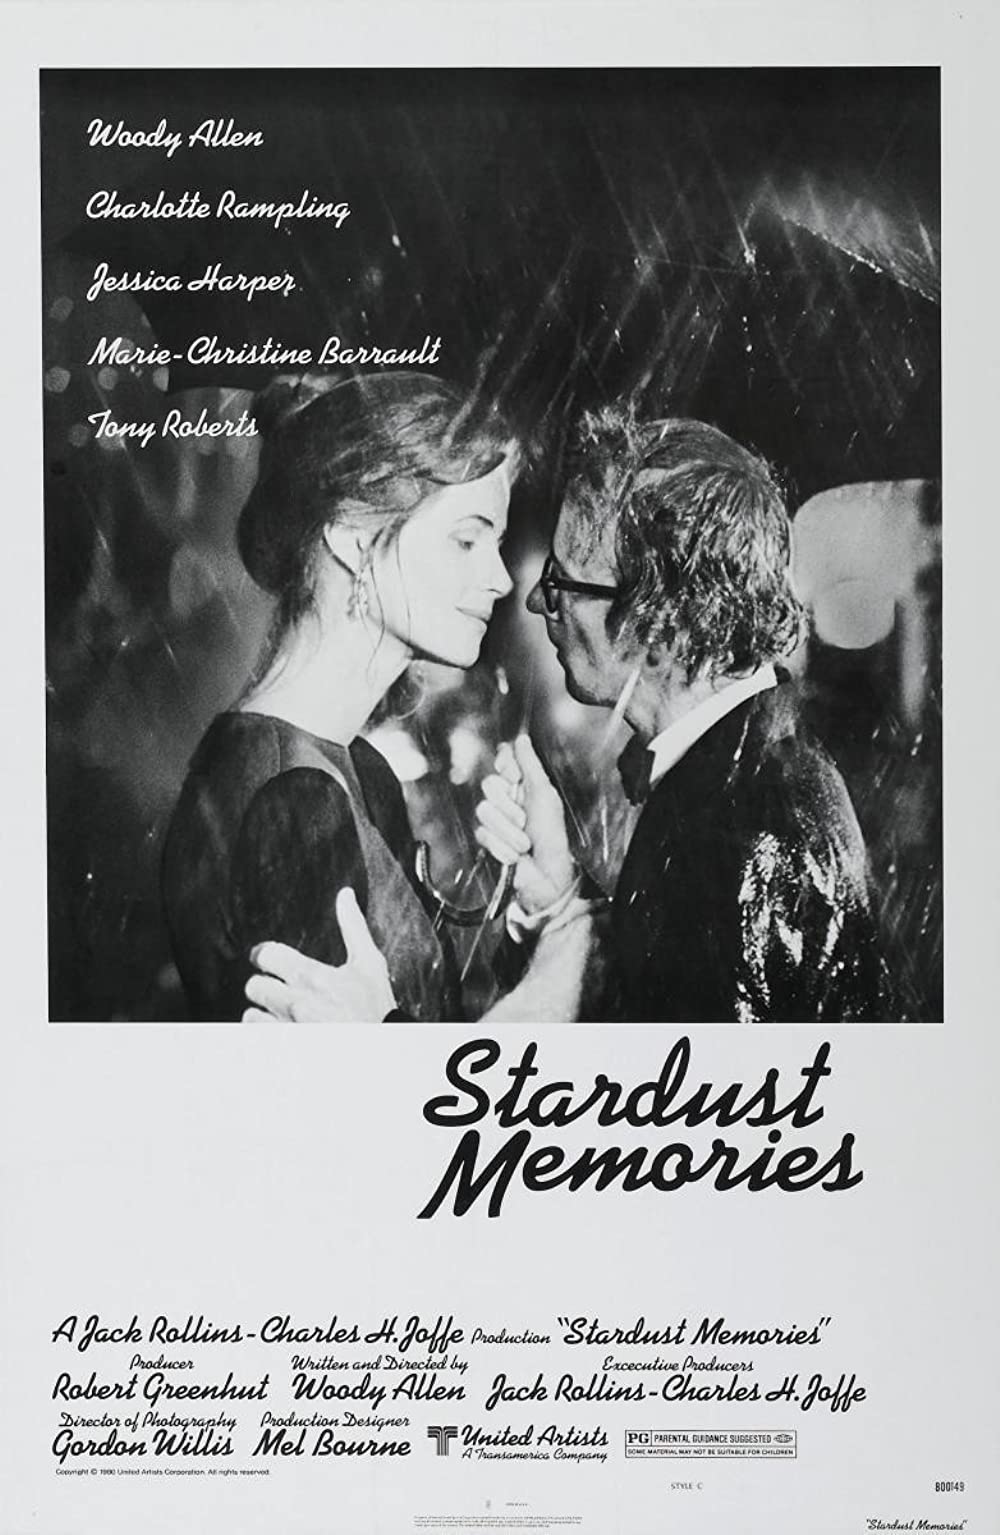 Filmbeschreibung zu Stardust Memories